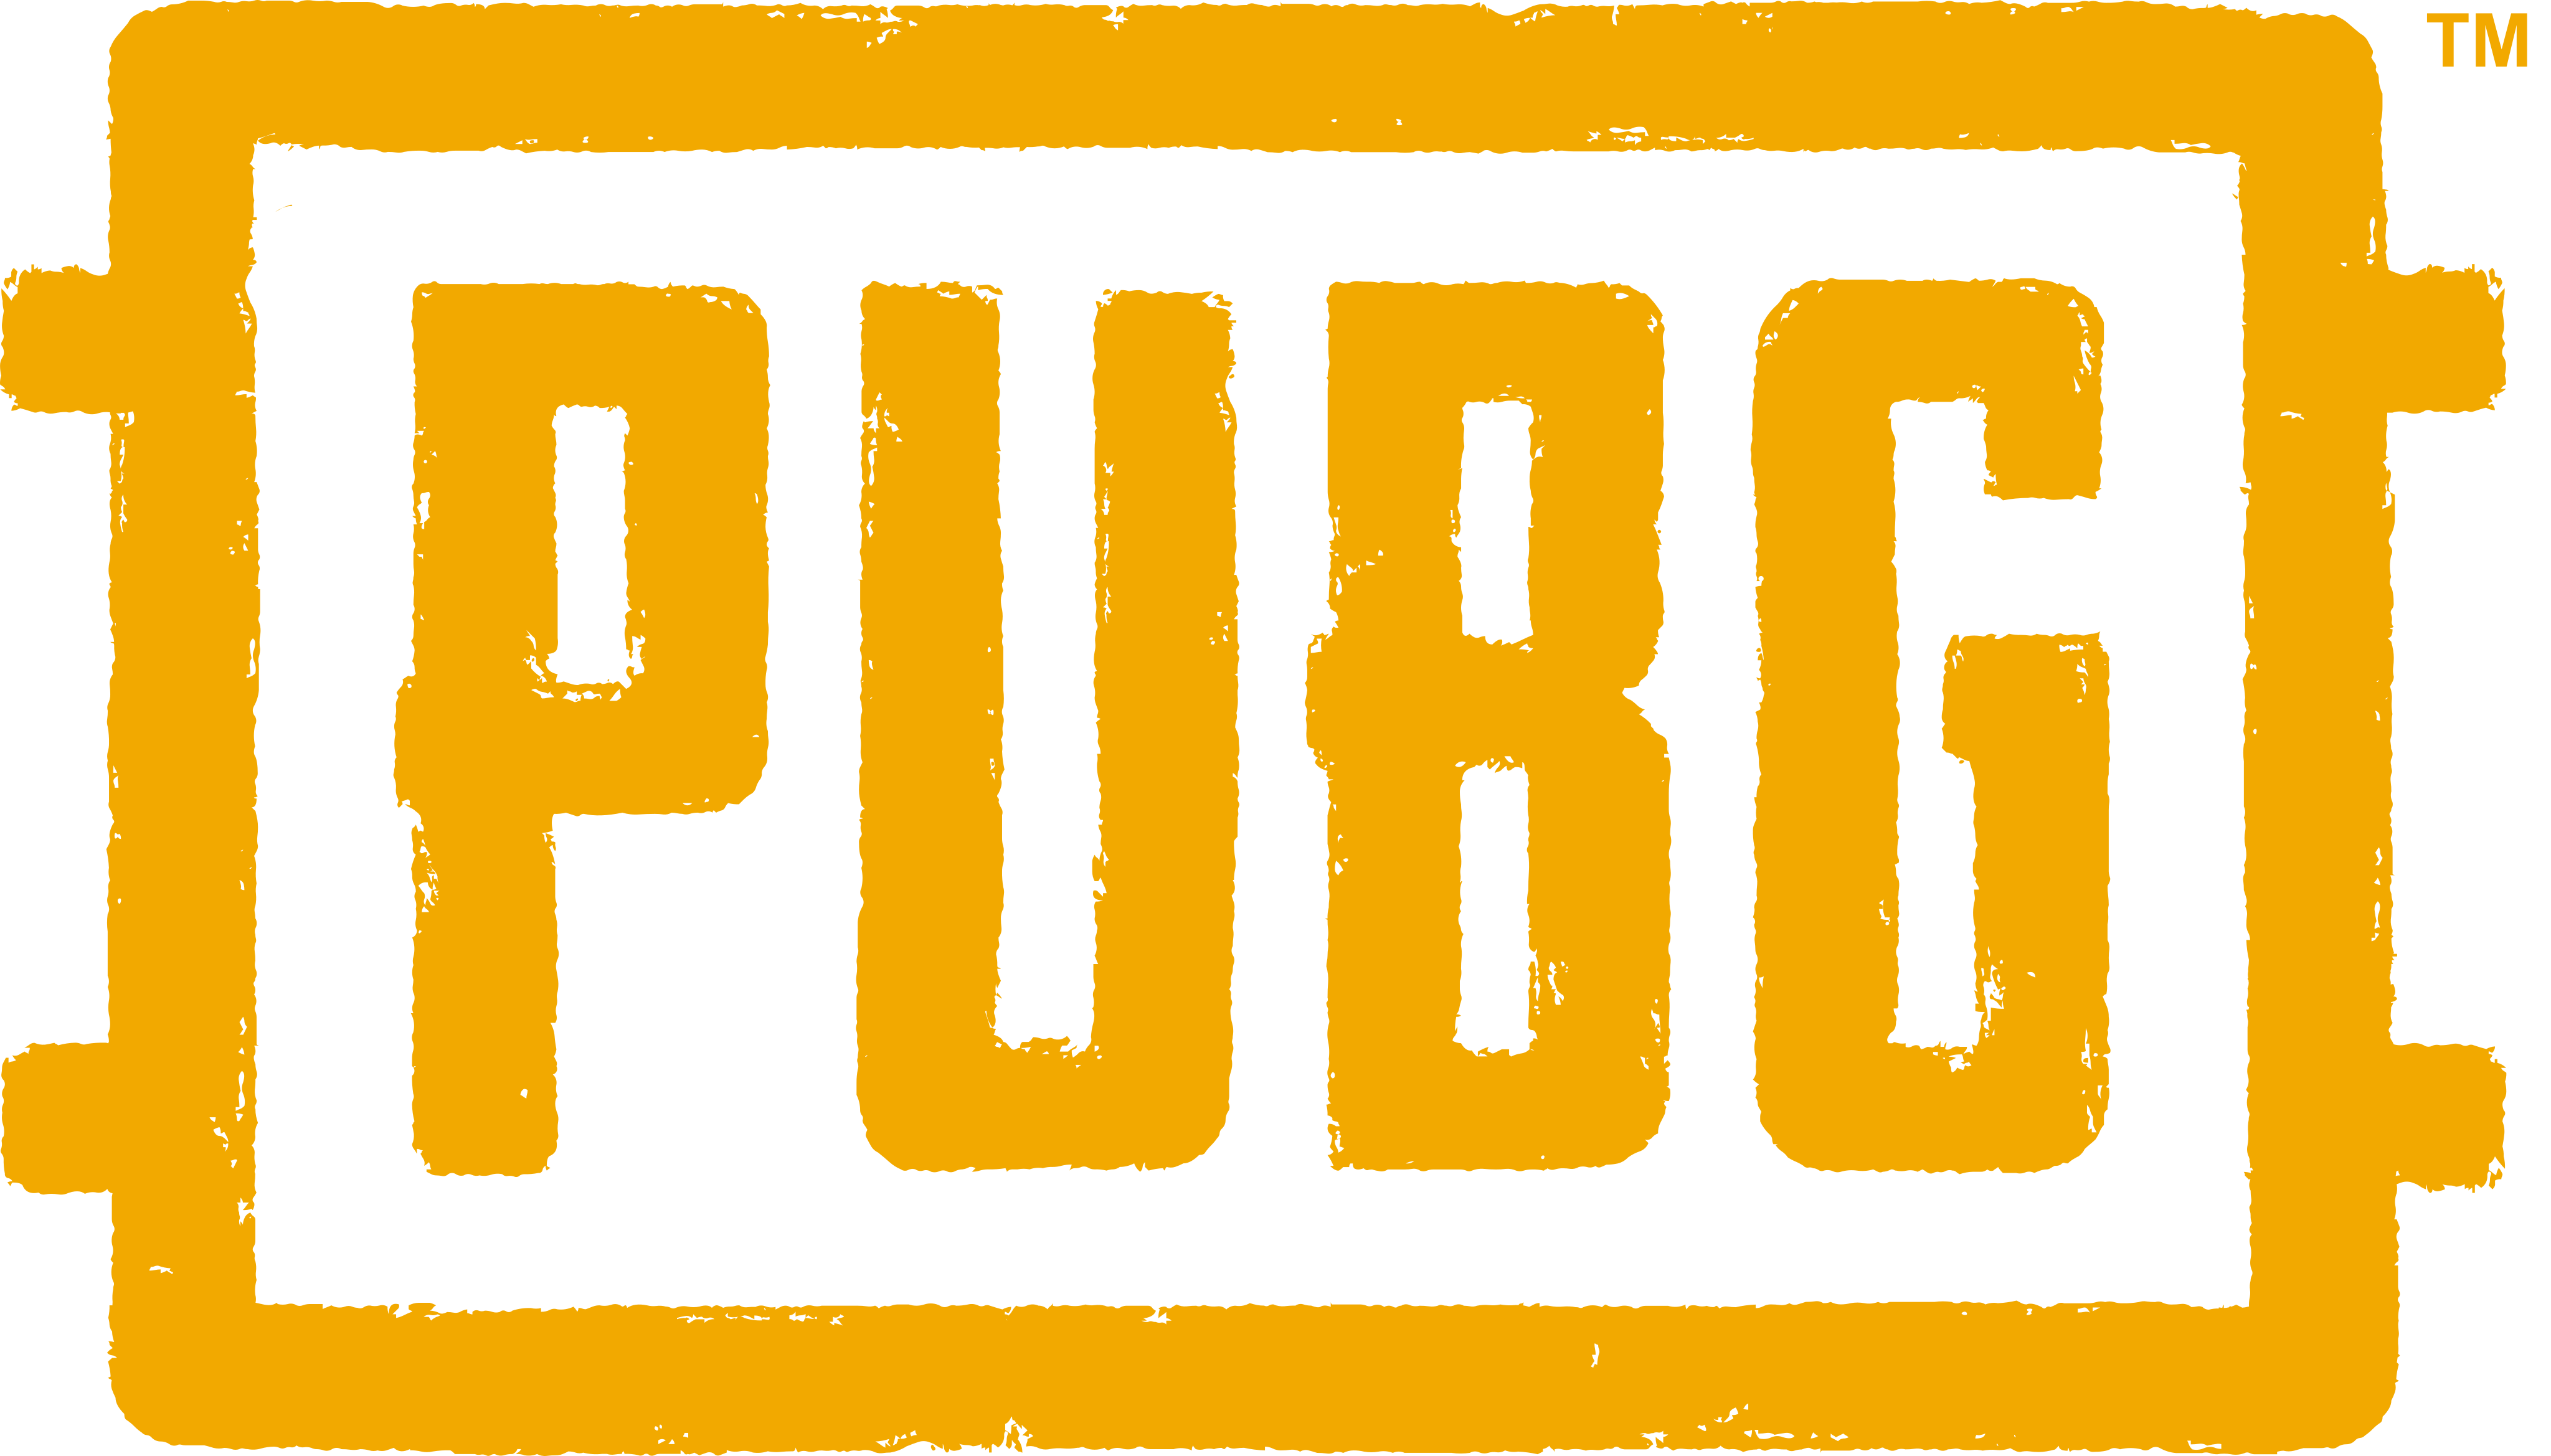 pubg logo 1 - PUBG Logo